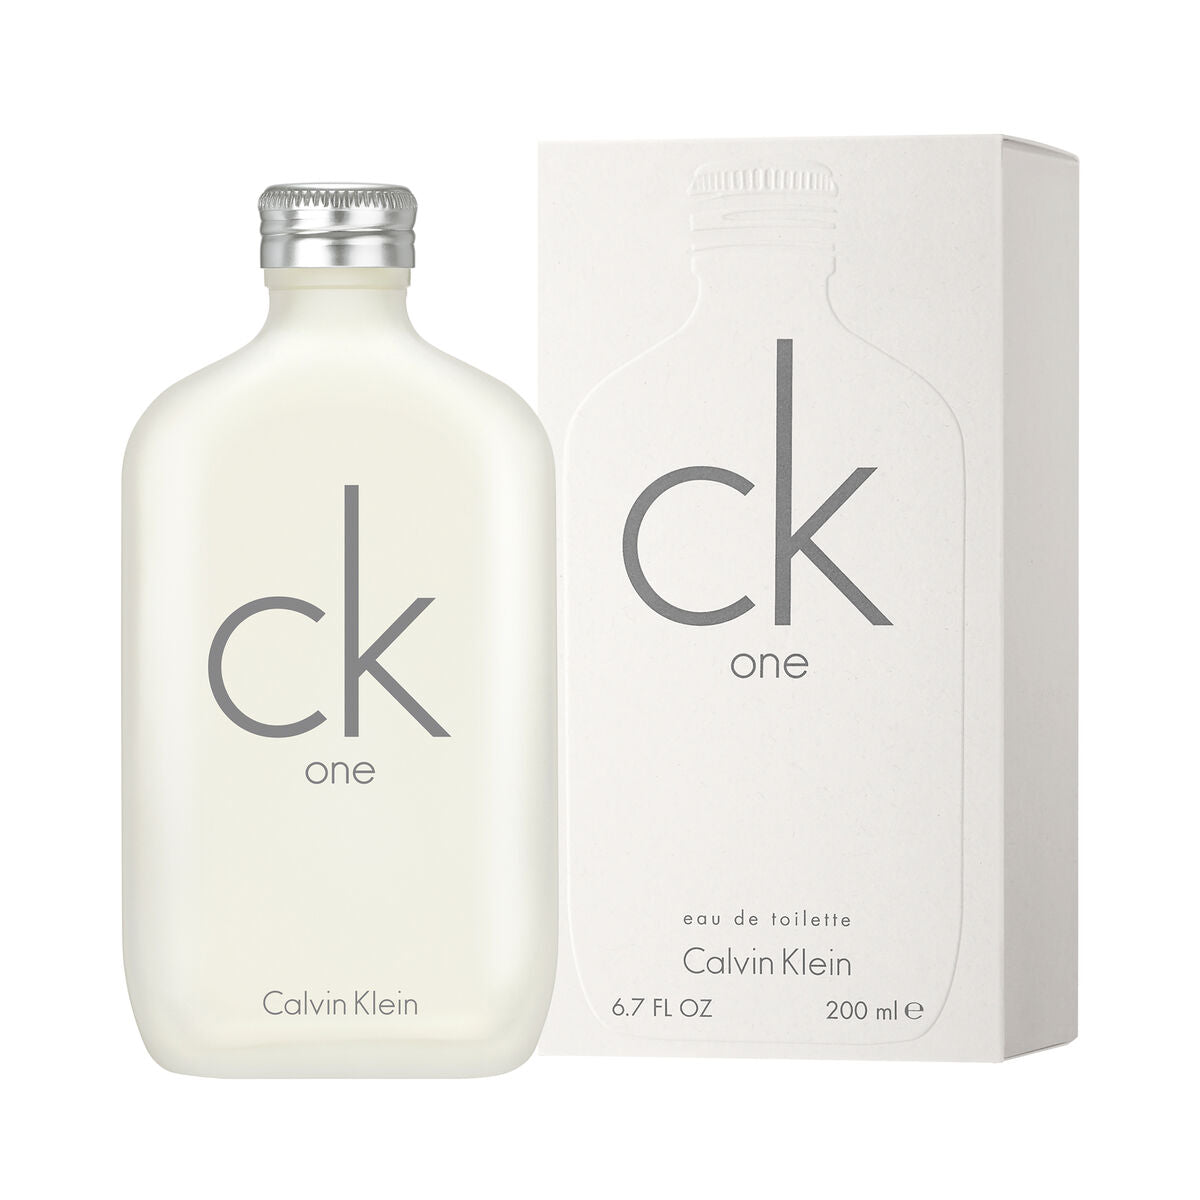 Unisex Perfume Calvin Klein EDT 200 ml ck one (Refurbished A)